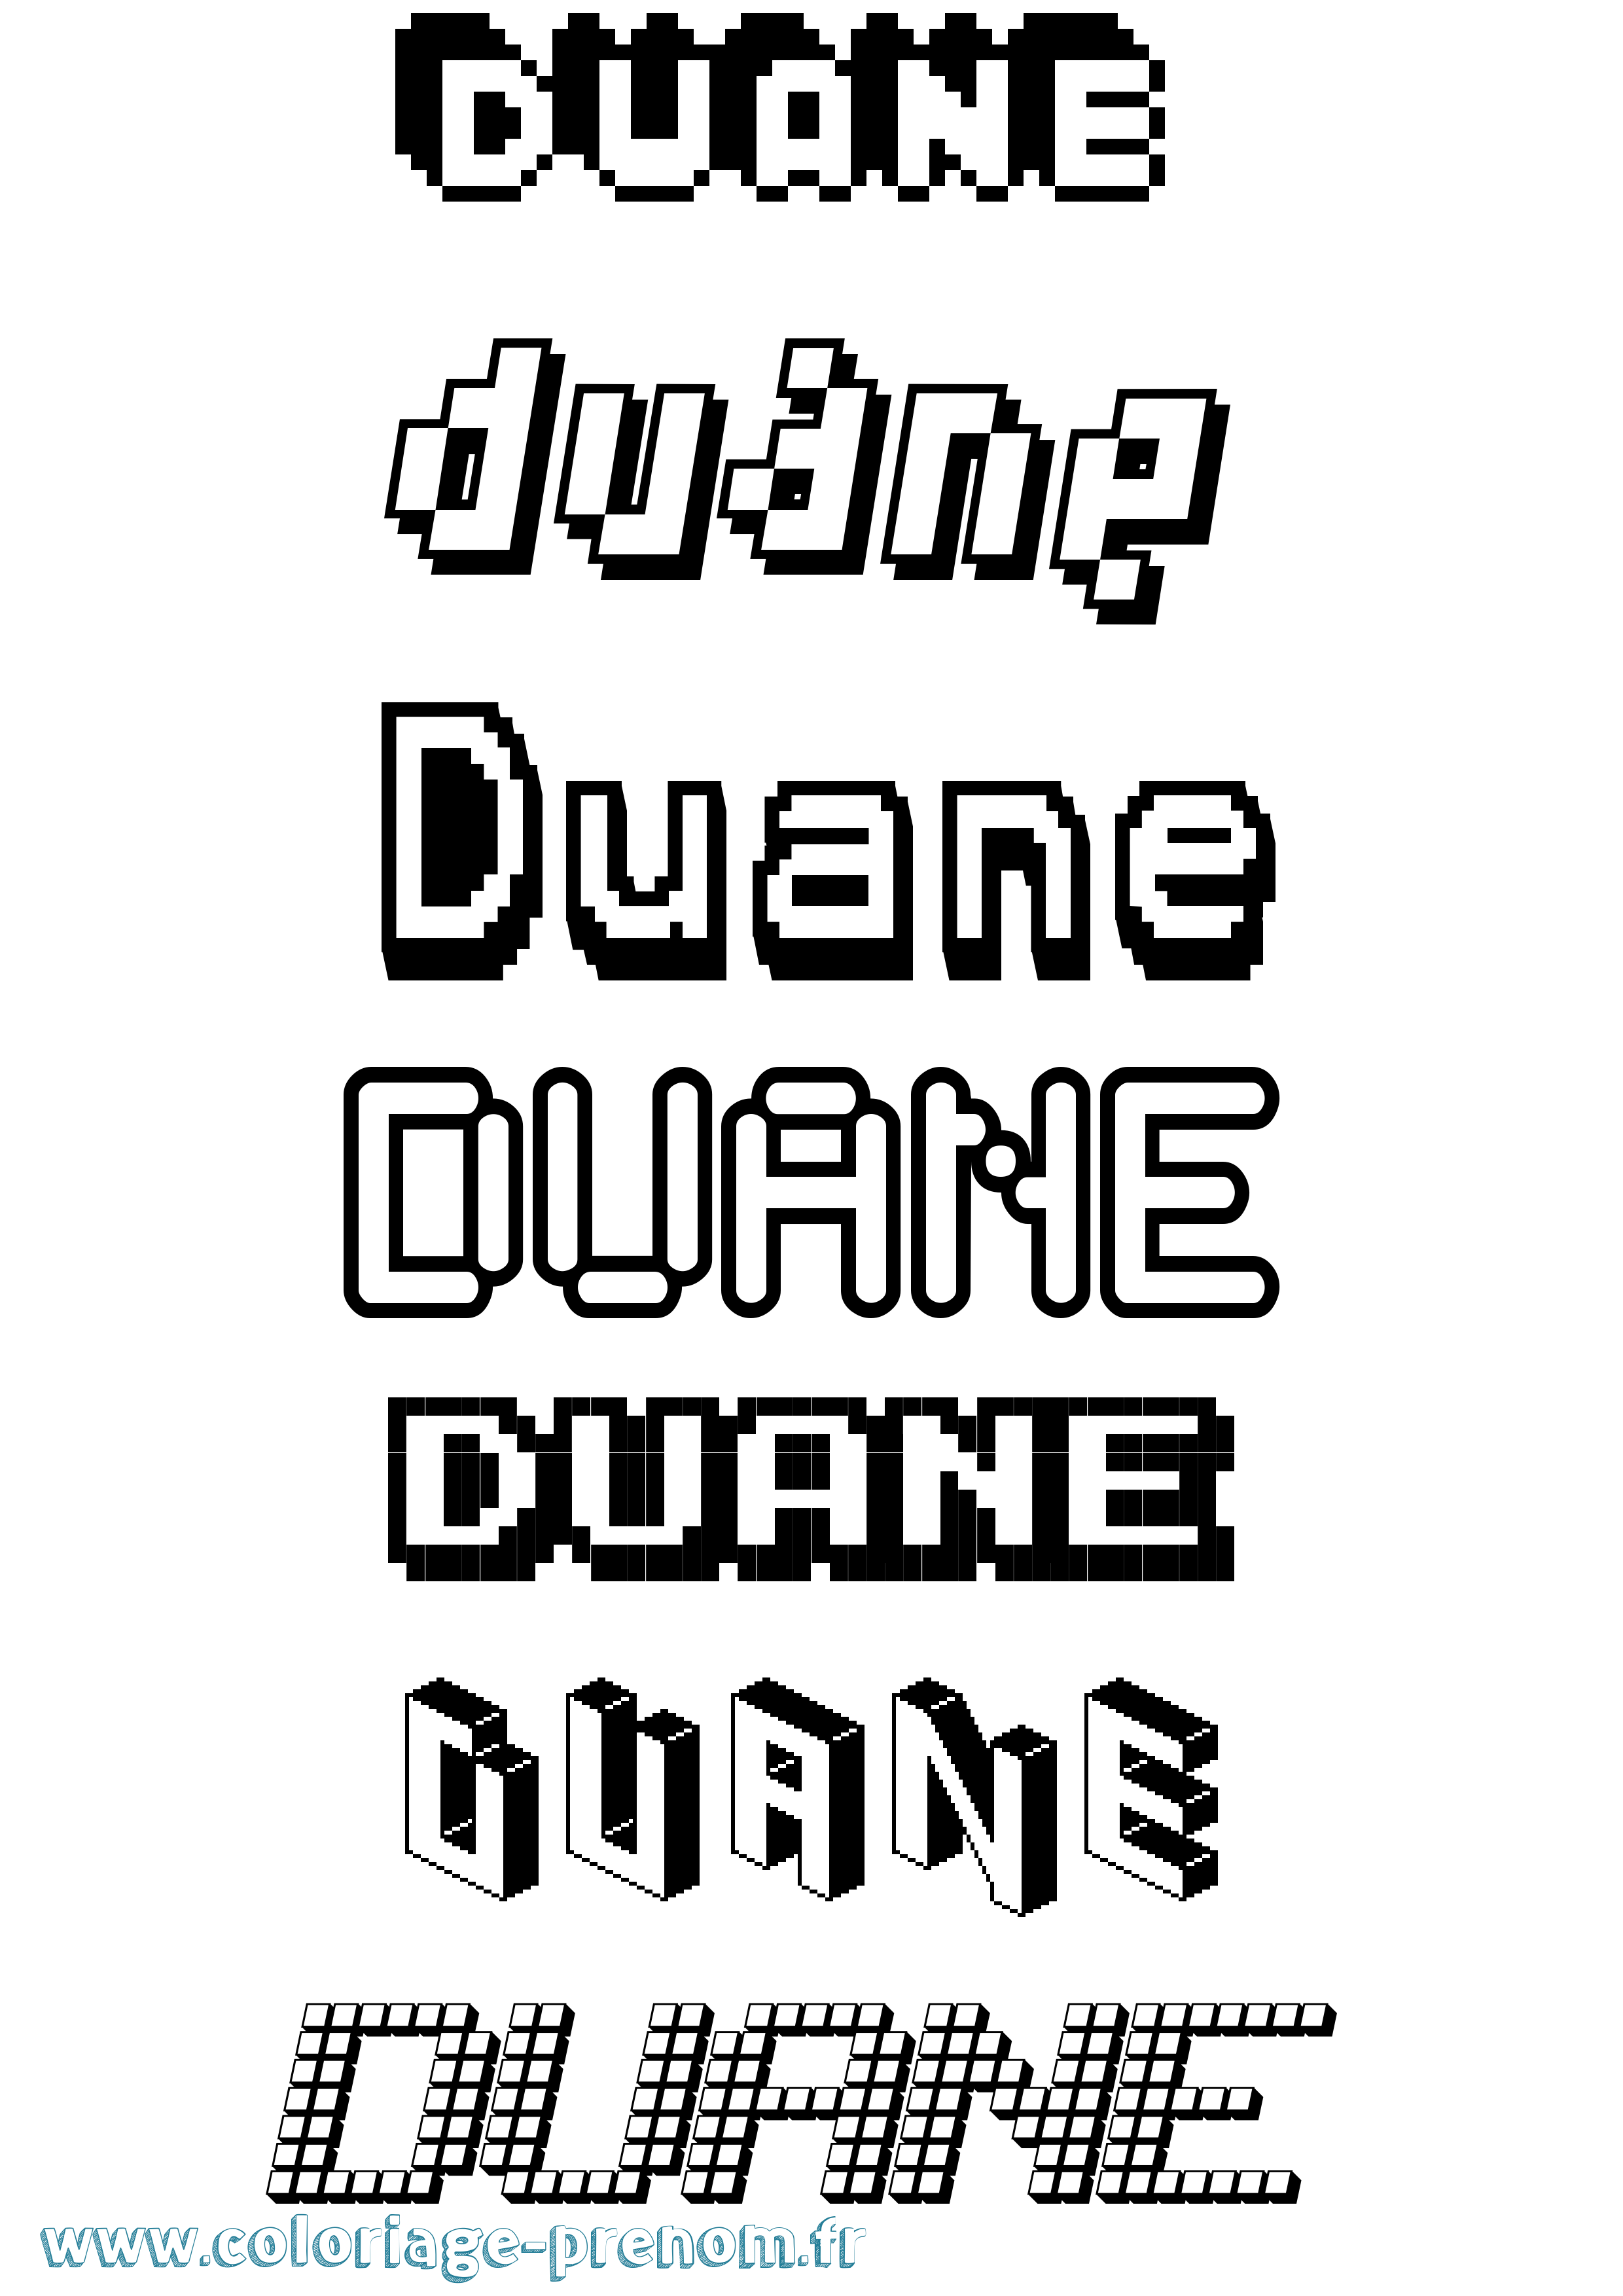 Coloriage prénom Duane Pixel